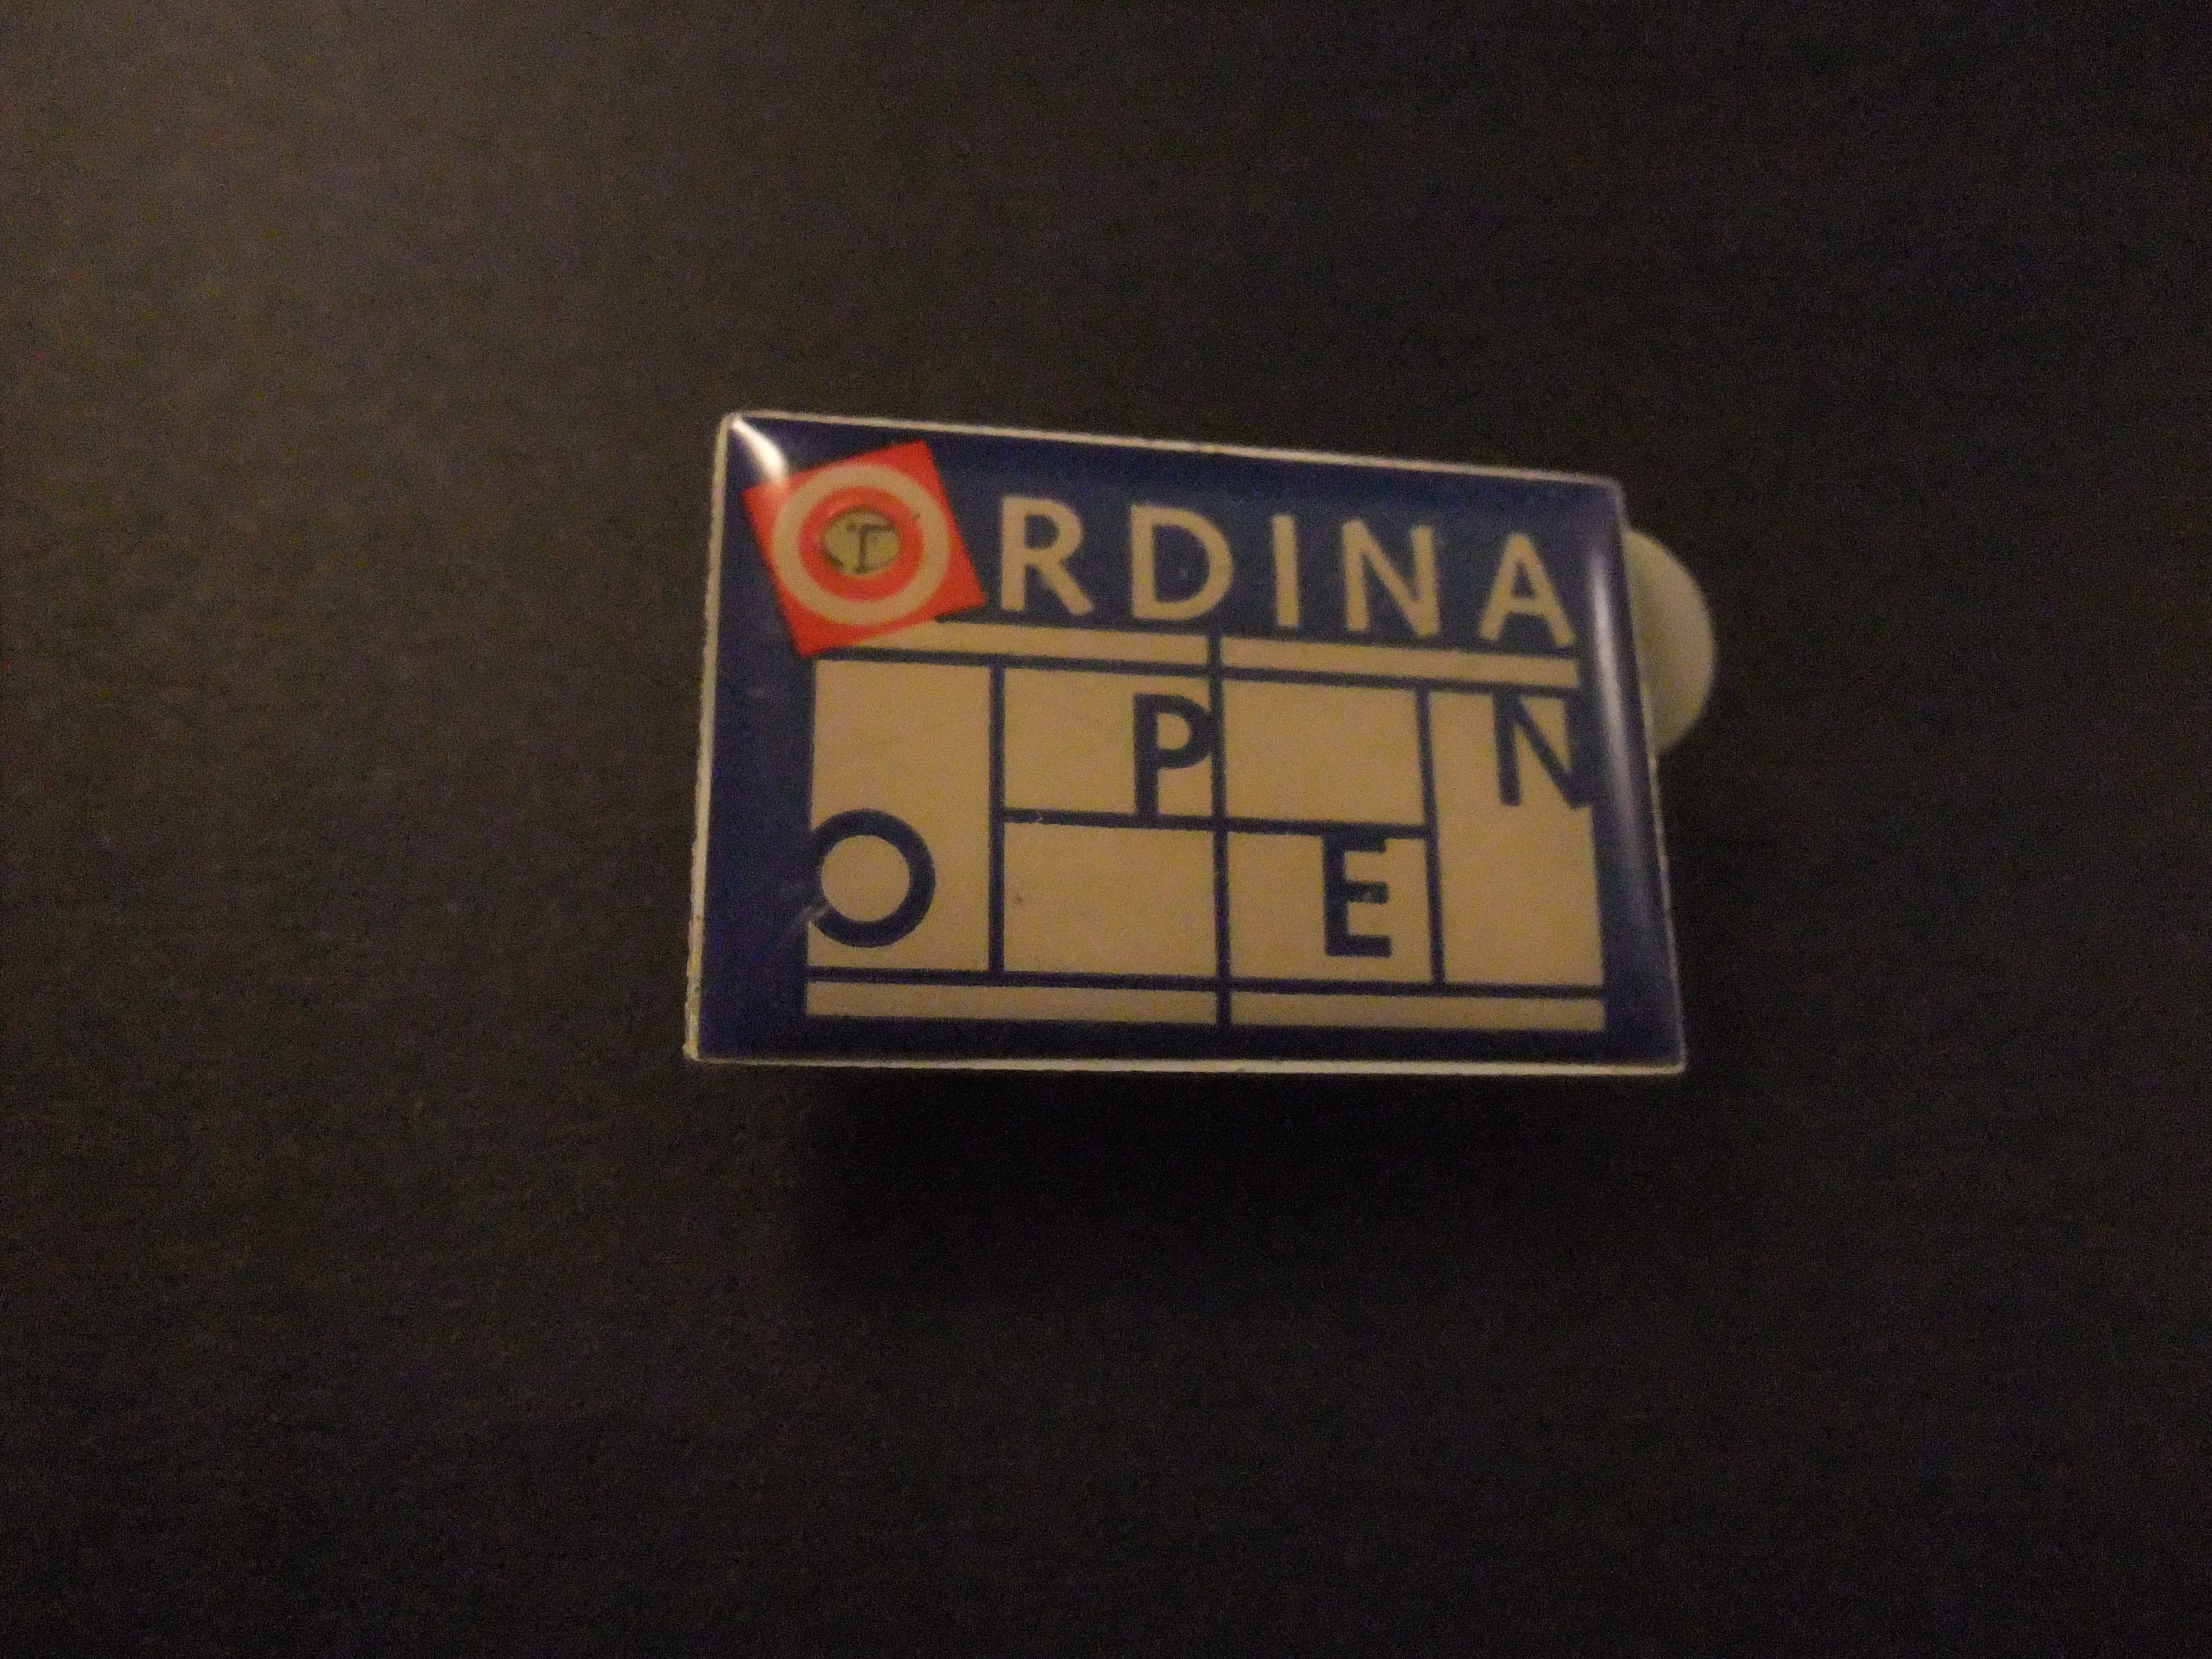 Ordina Open ( tennistoernooi van Rosmalen)